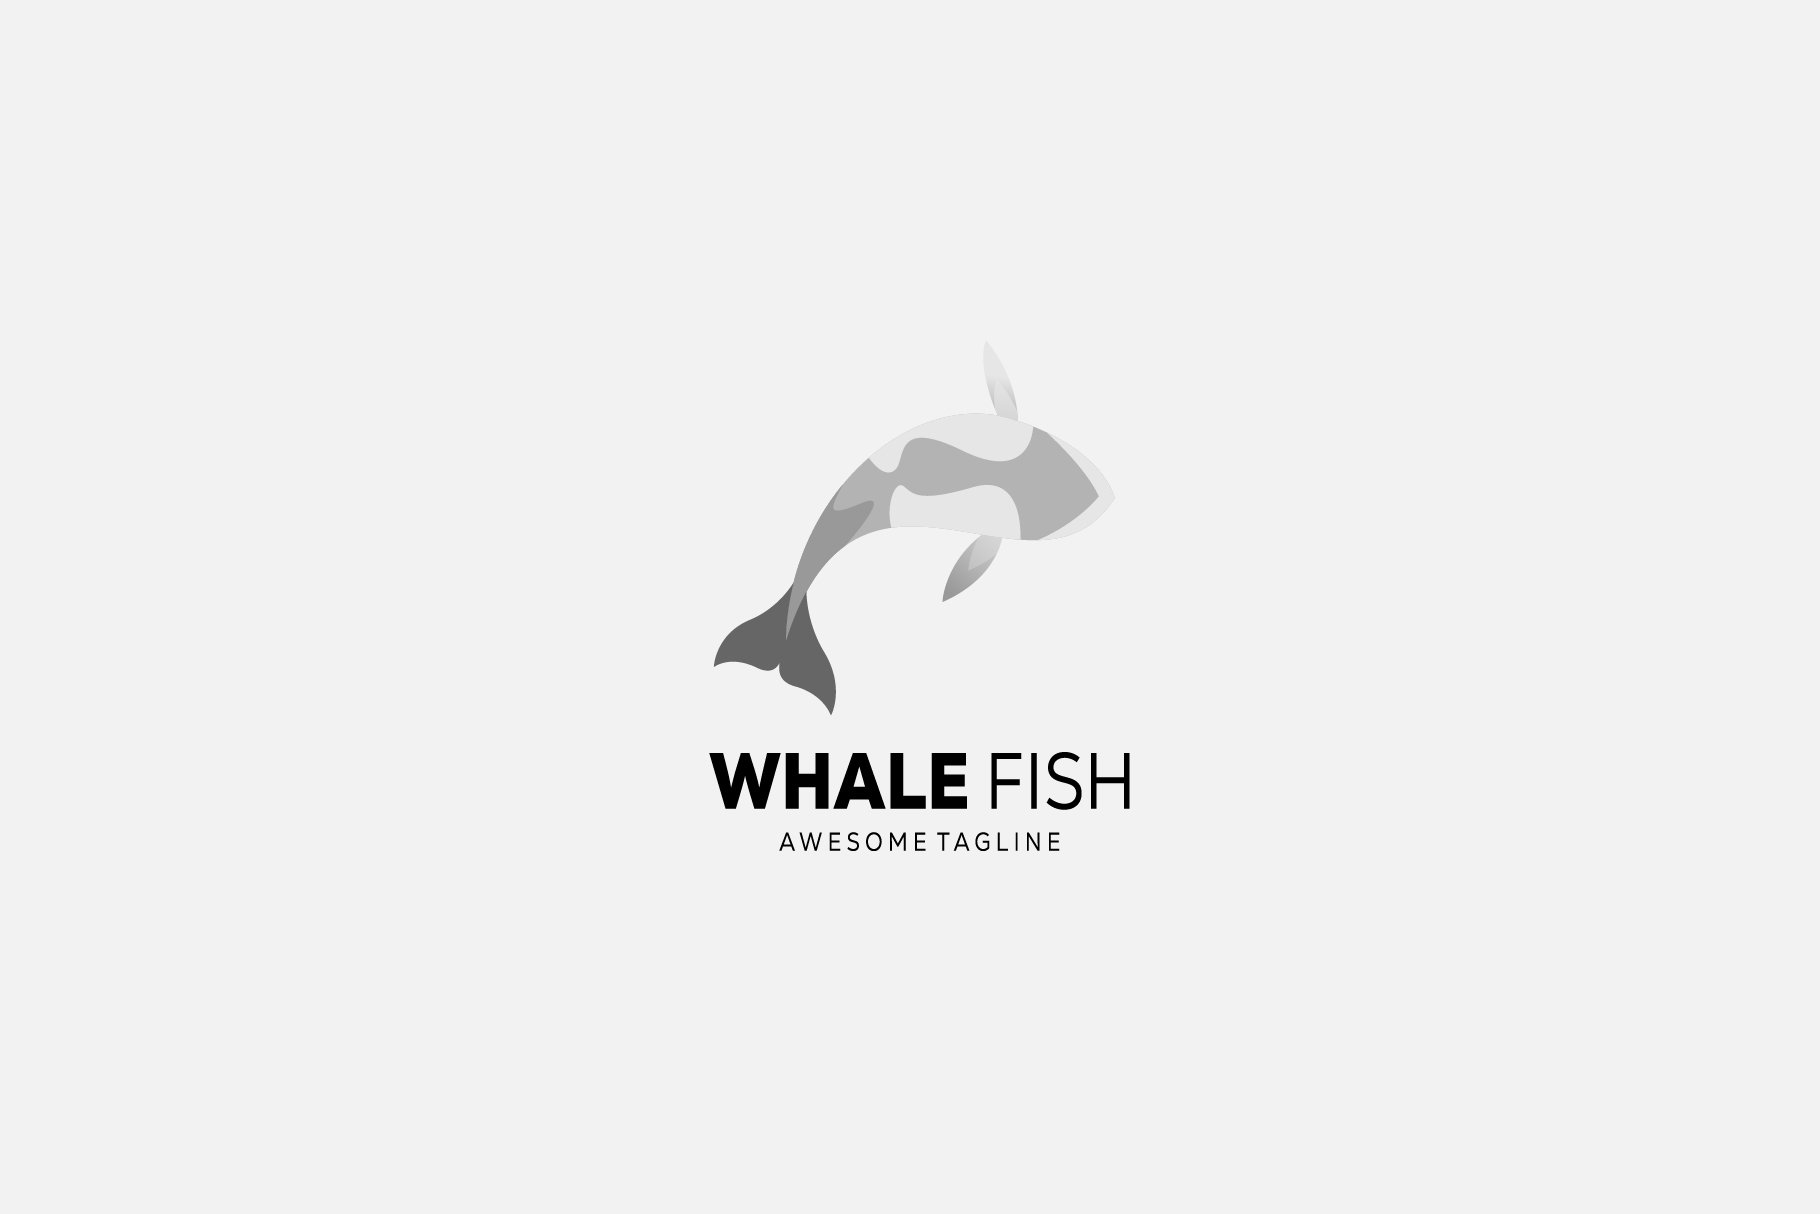 whale fish design logo icon illustra cover image.